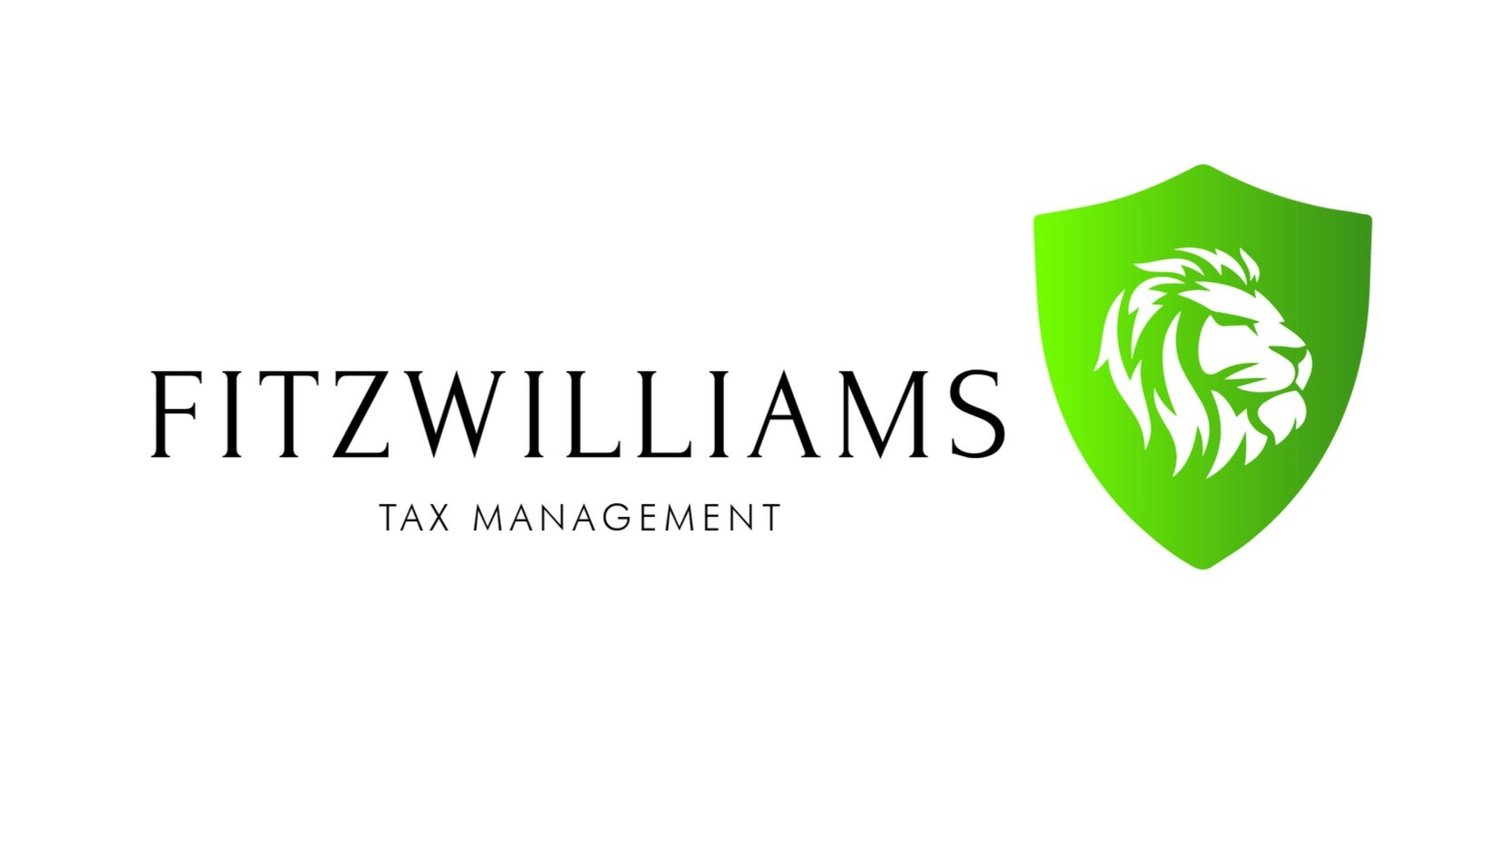 Fitzwilliams Tax Management